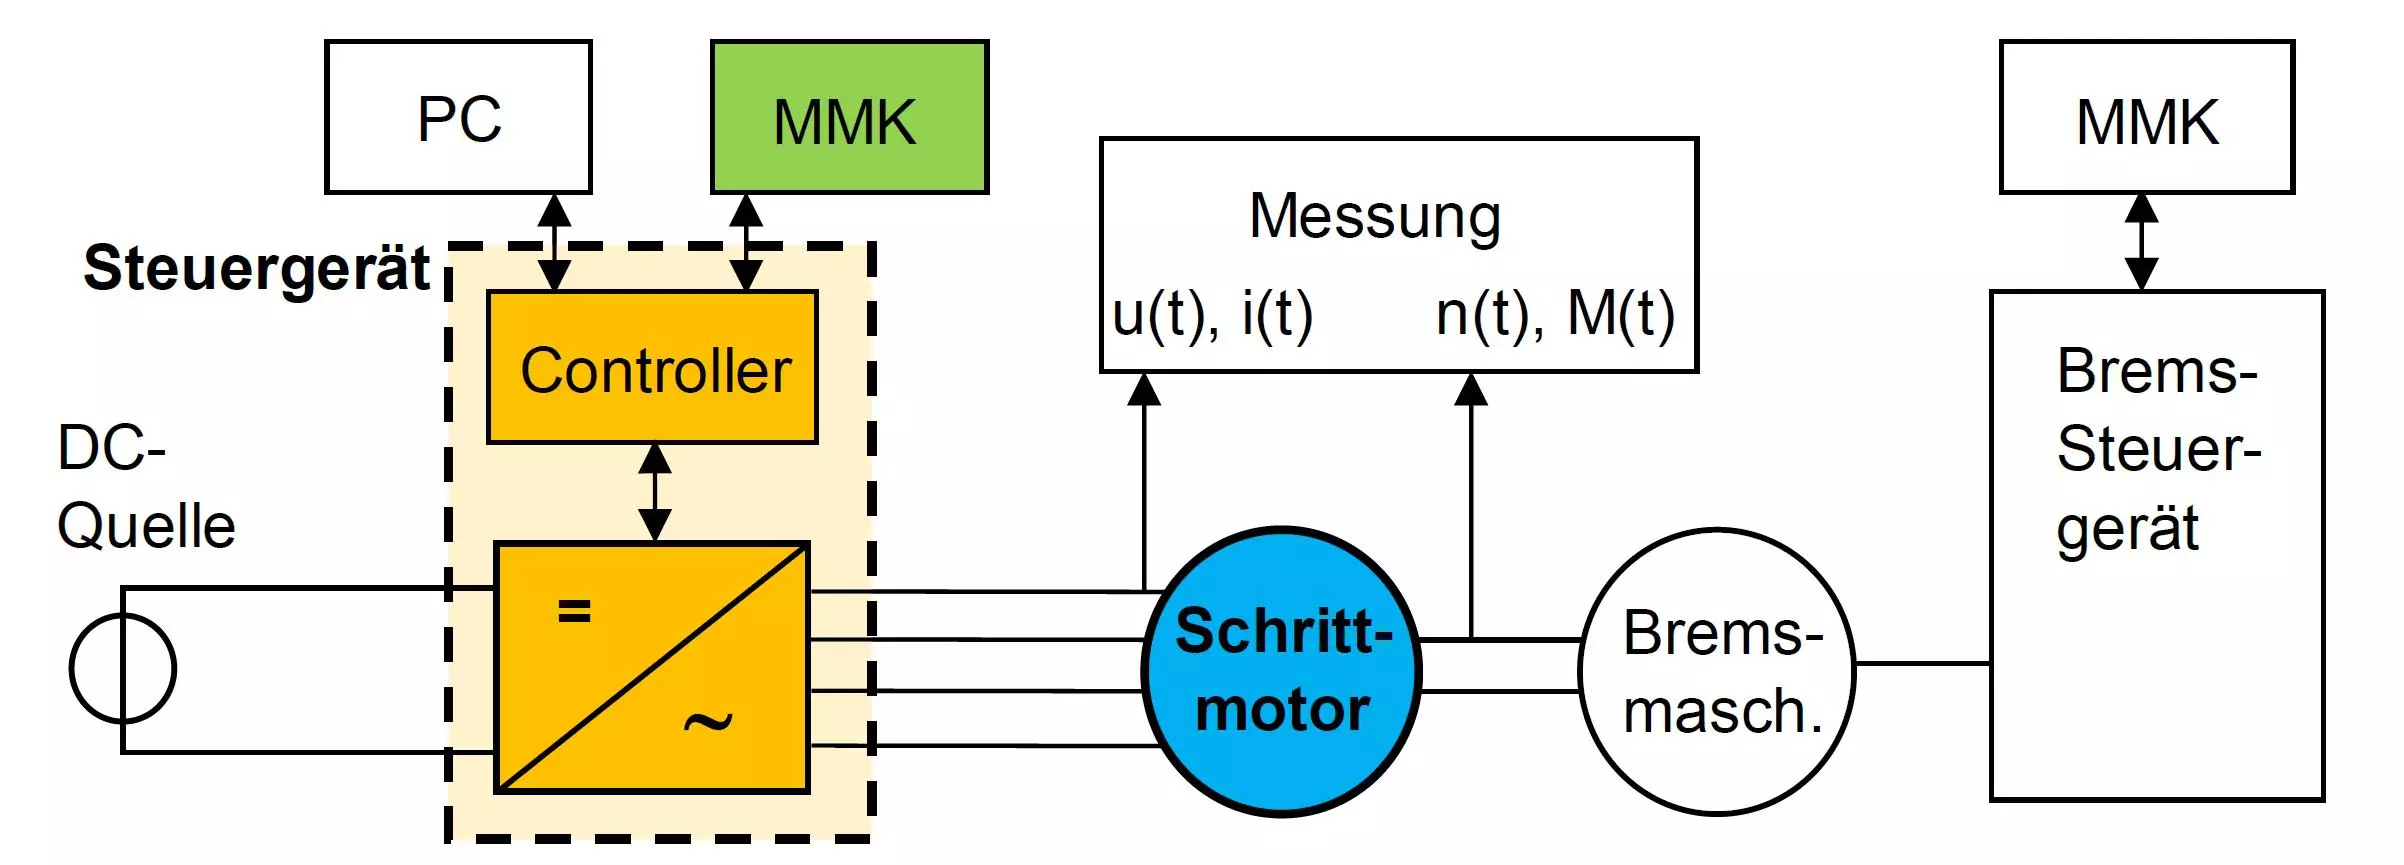 Das Blockschema zeigt den Schrittmotor-Versuch (MMK = Mensch-Maschine-Kommunikation).